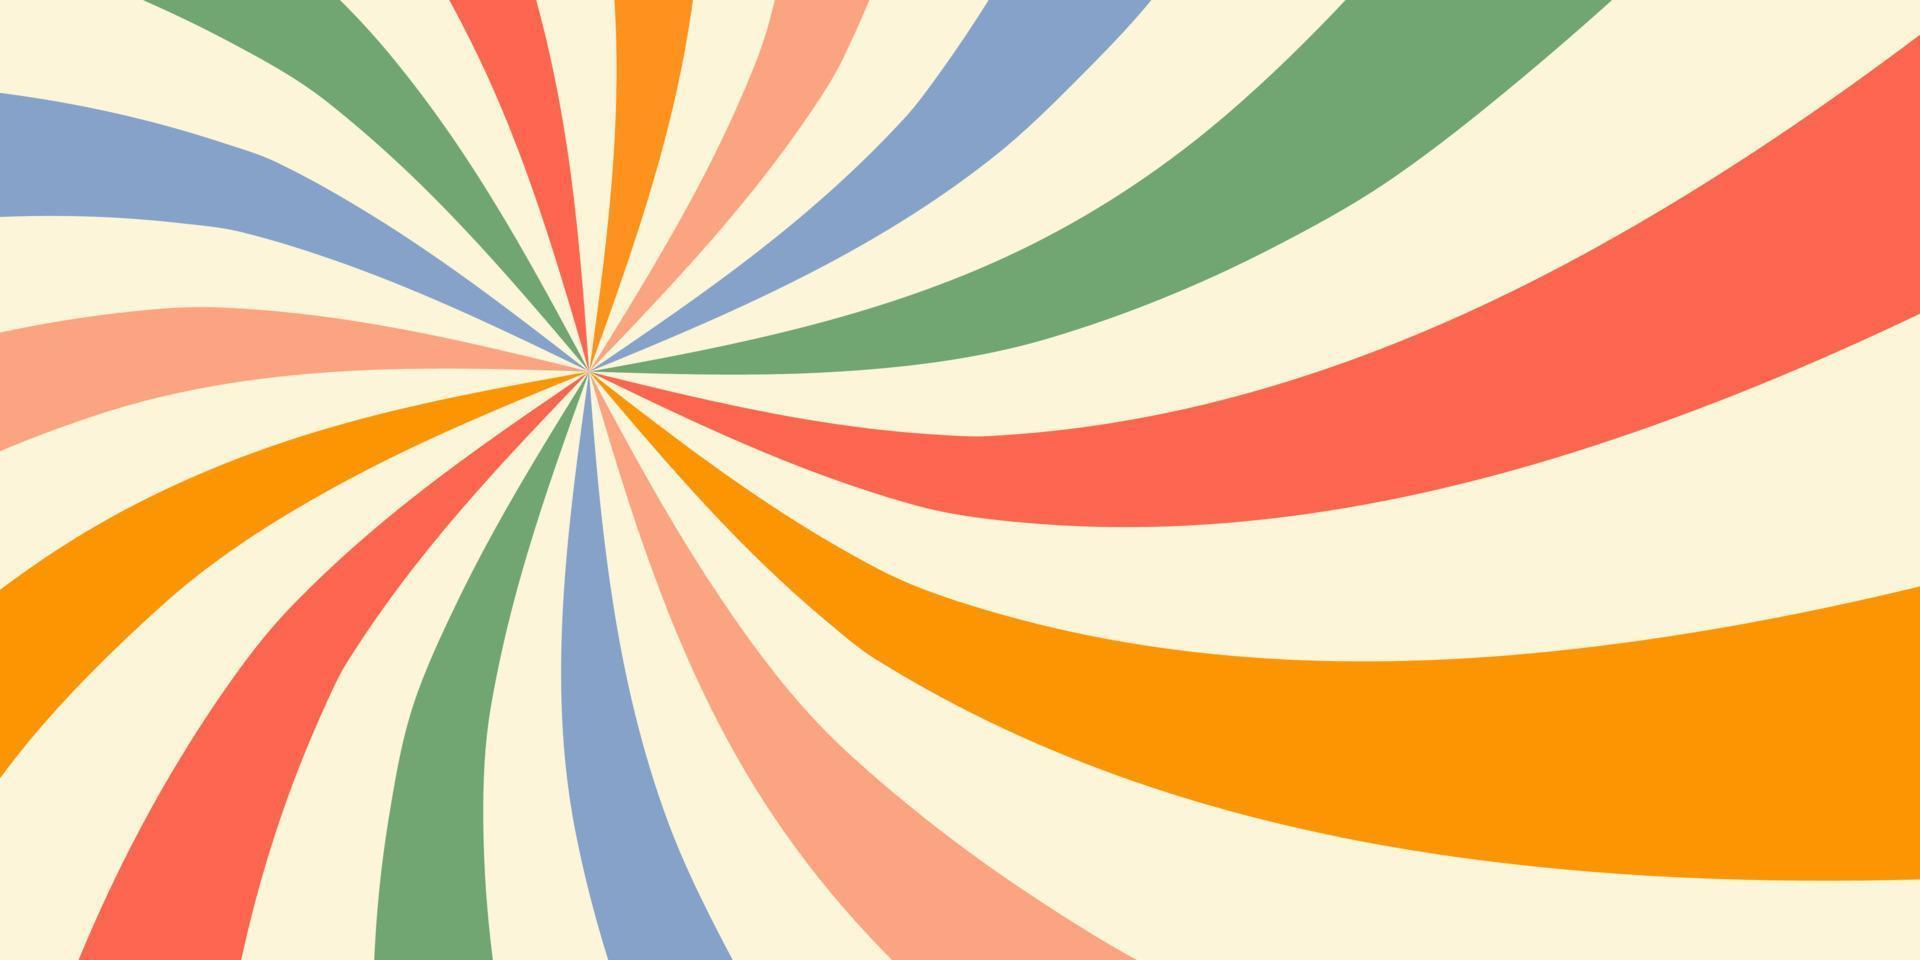 fondo horizontal retro vintage con coloridos remolinos de sol en estilo años 60, 70. ilustración vectorial vector